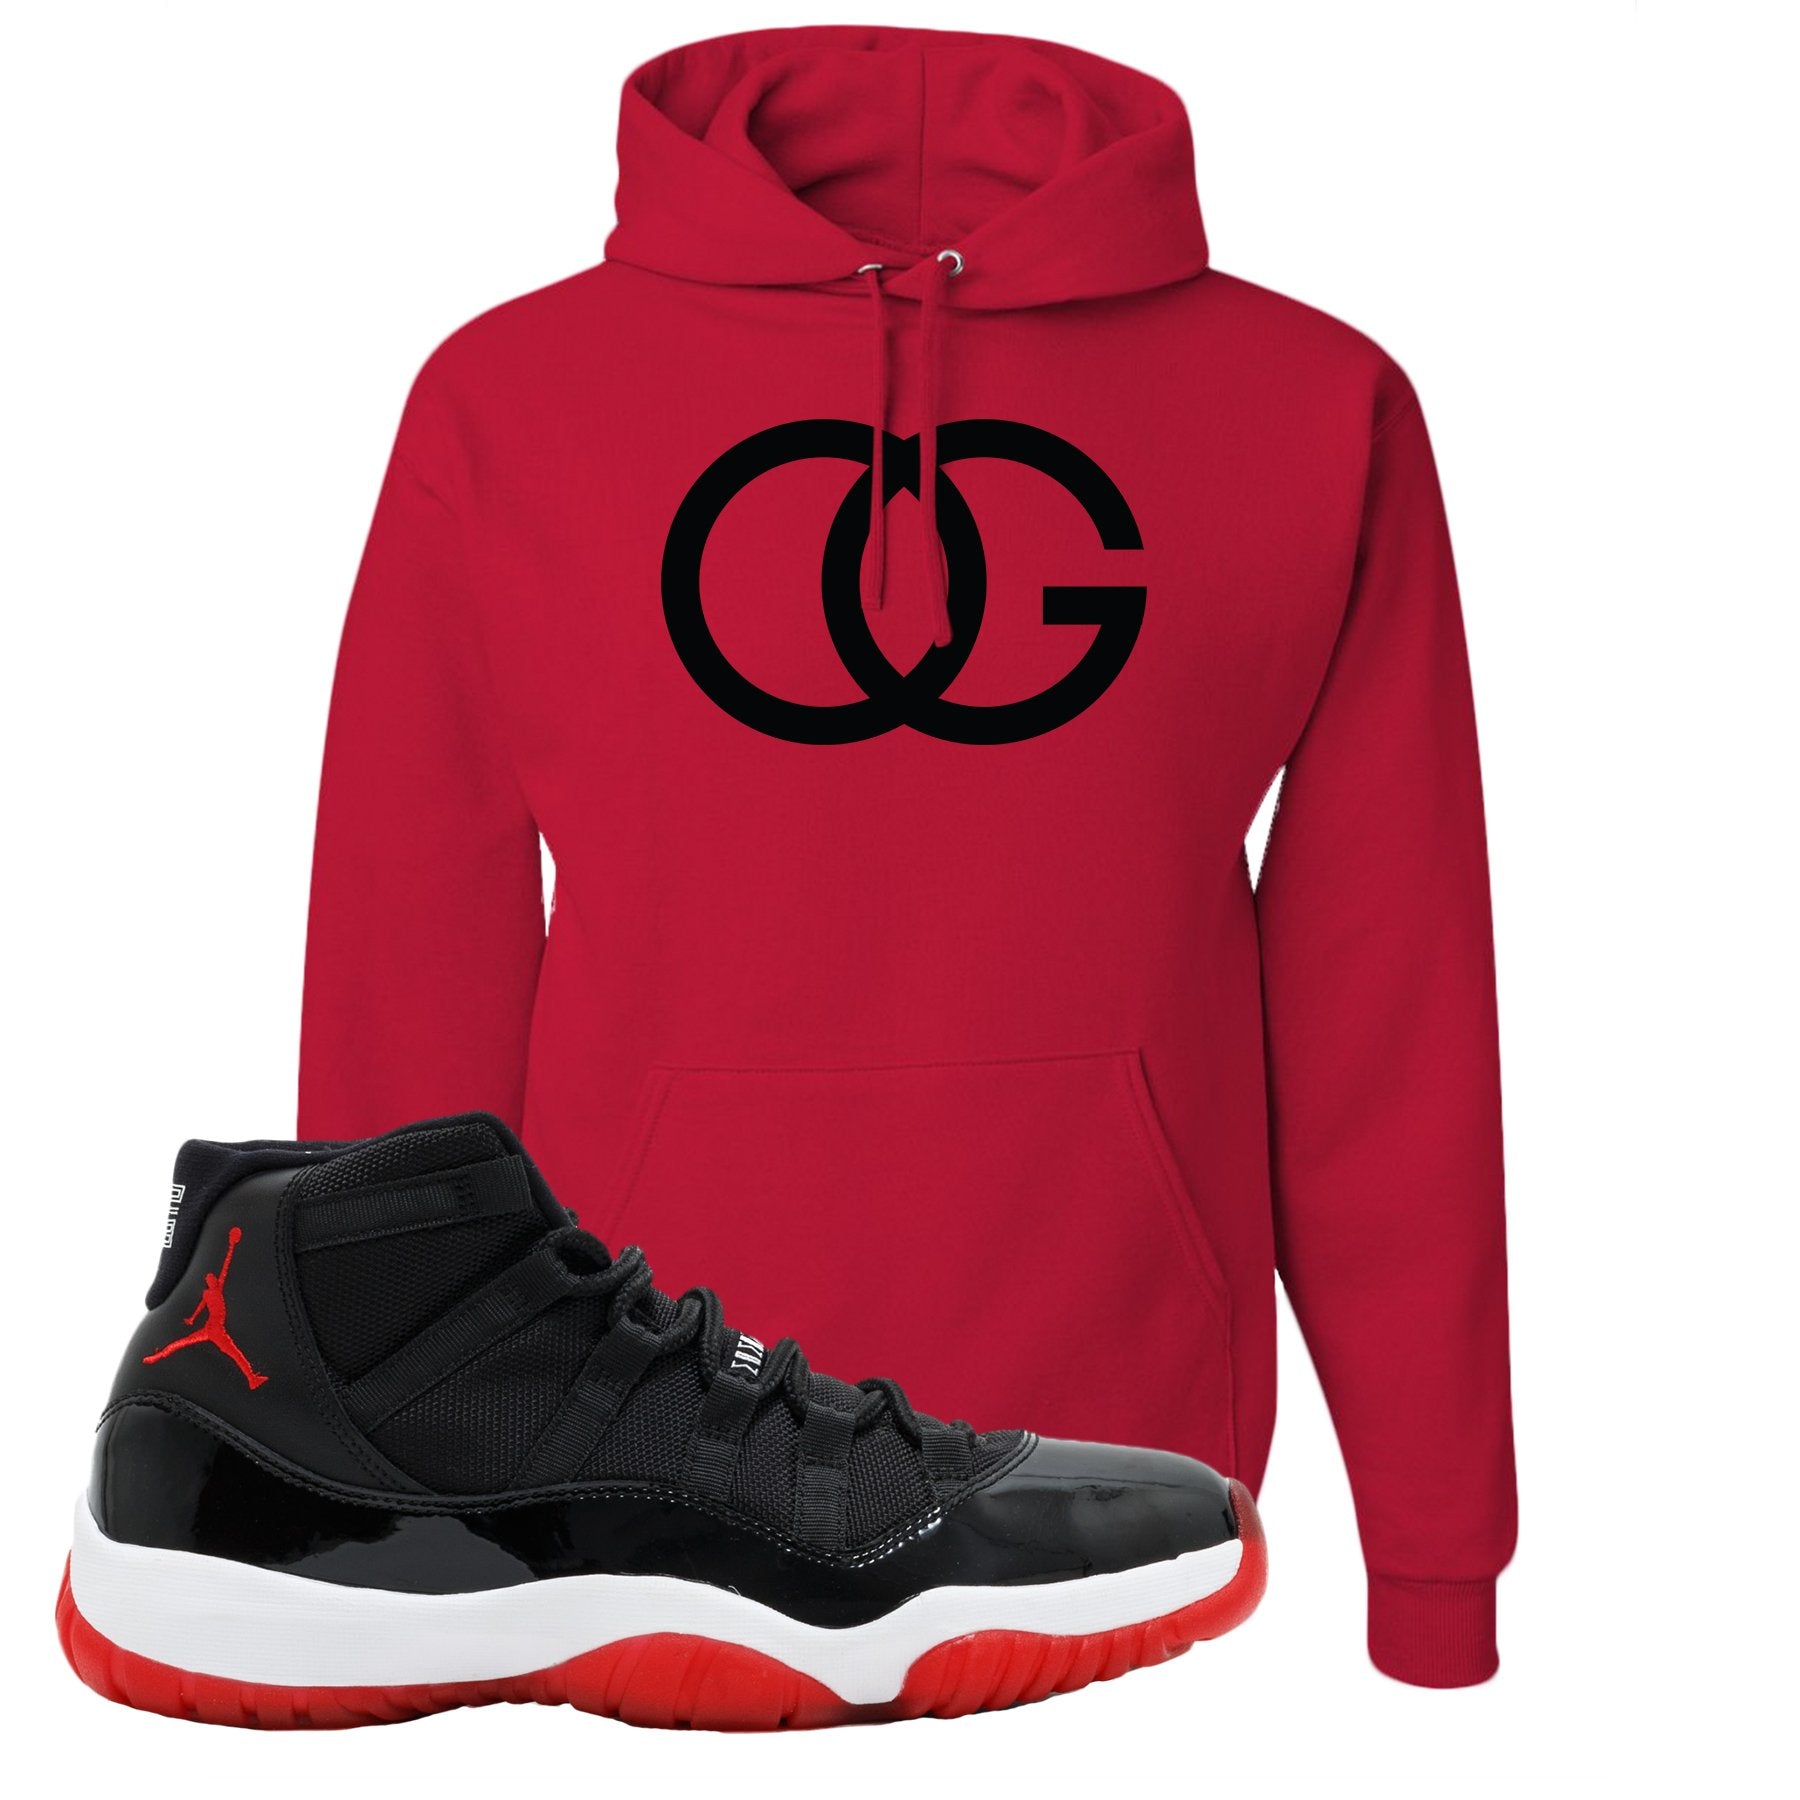 Jordan 11 Bred OG Red Sneaker Hook Up Pullover Hoodie